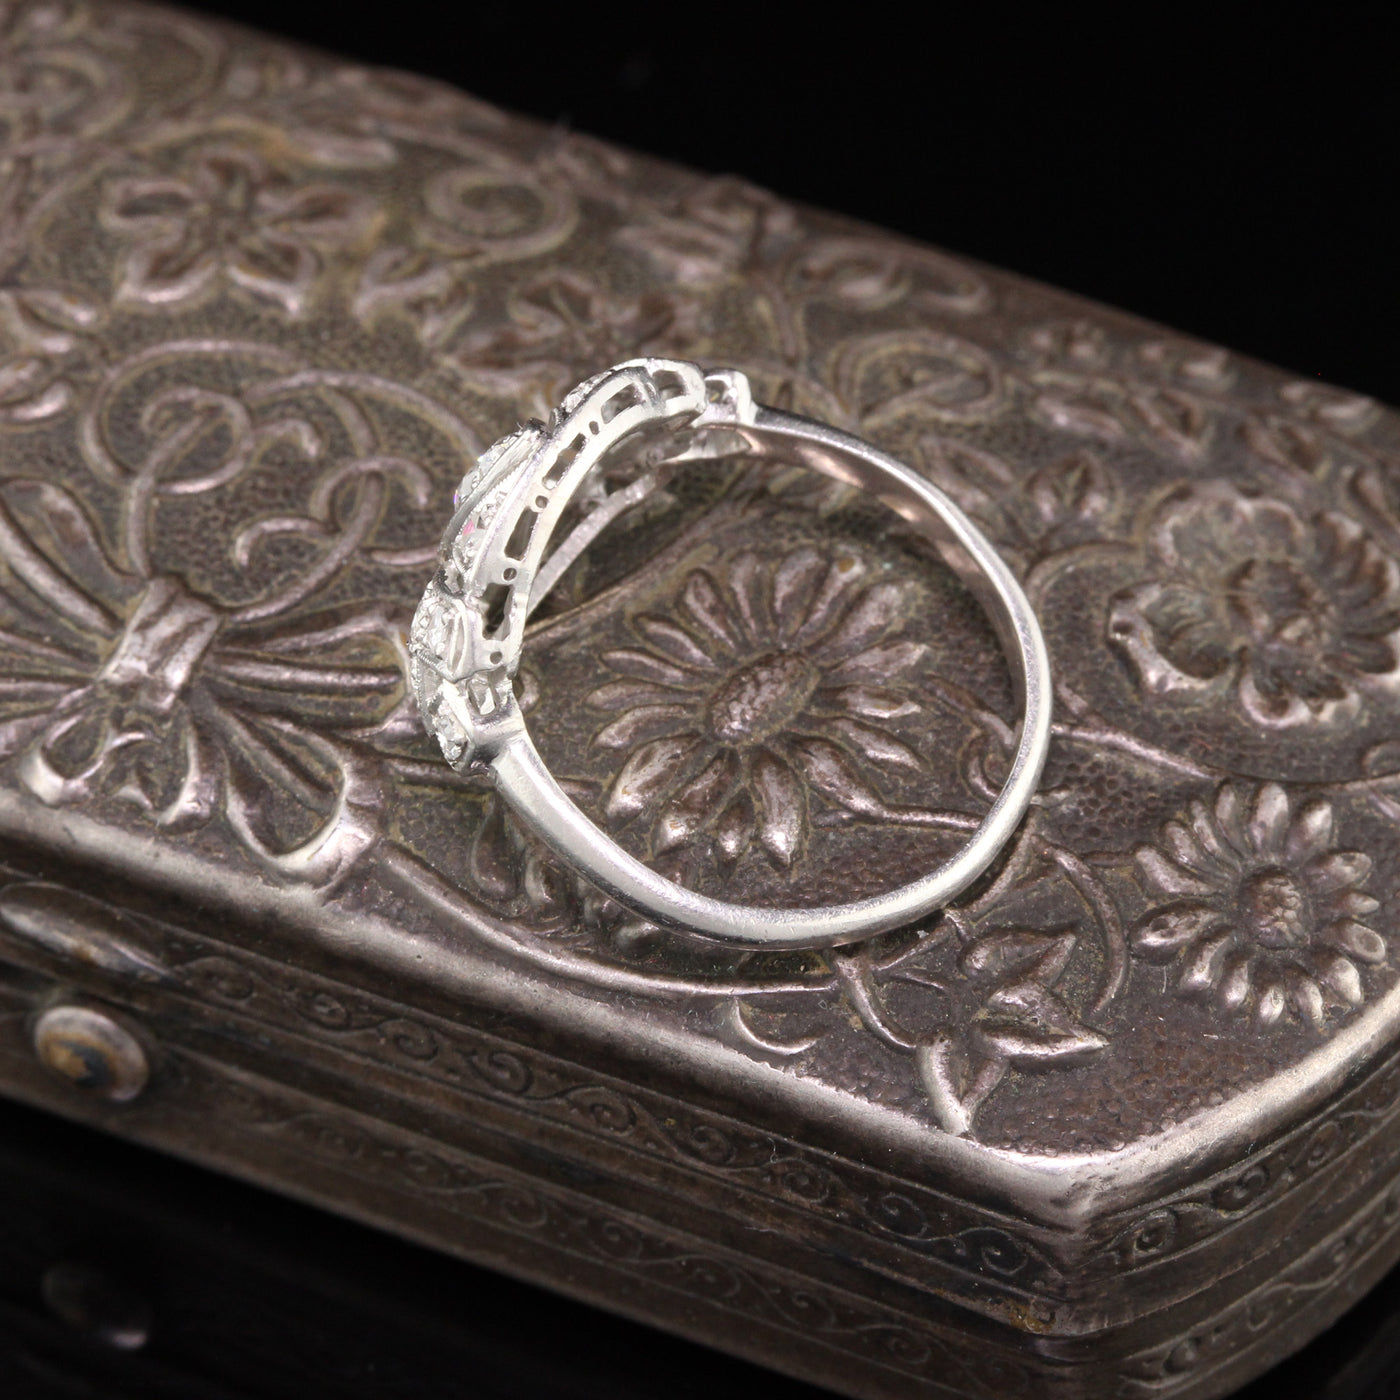 Antique Art Deco Platinum & Diamond Ring - The Antique Parlour